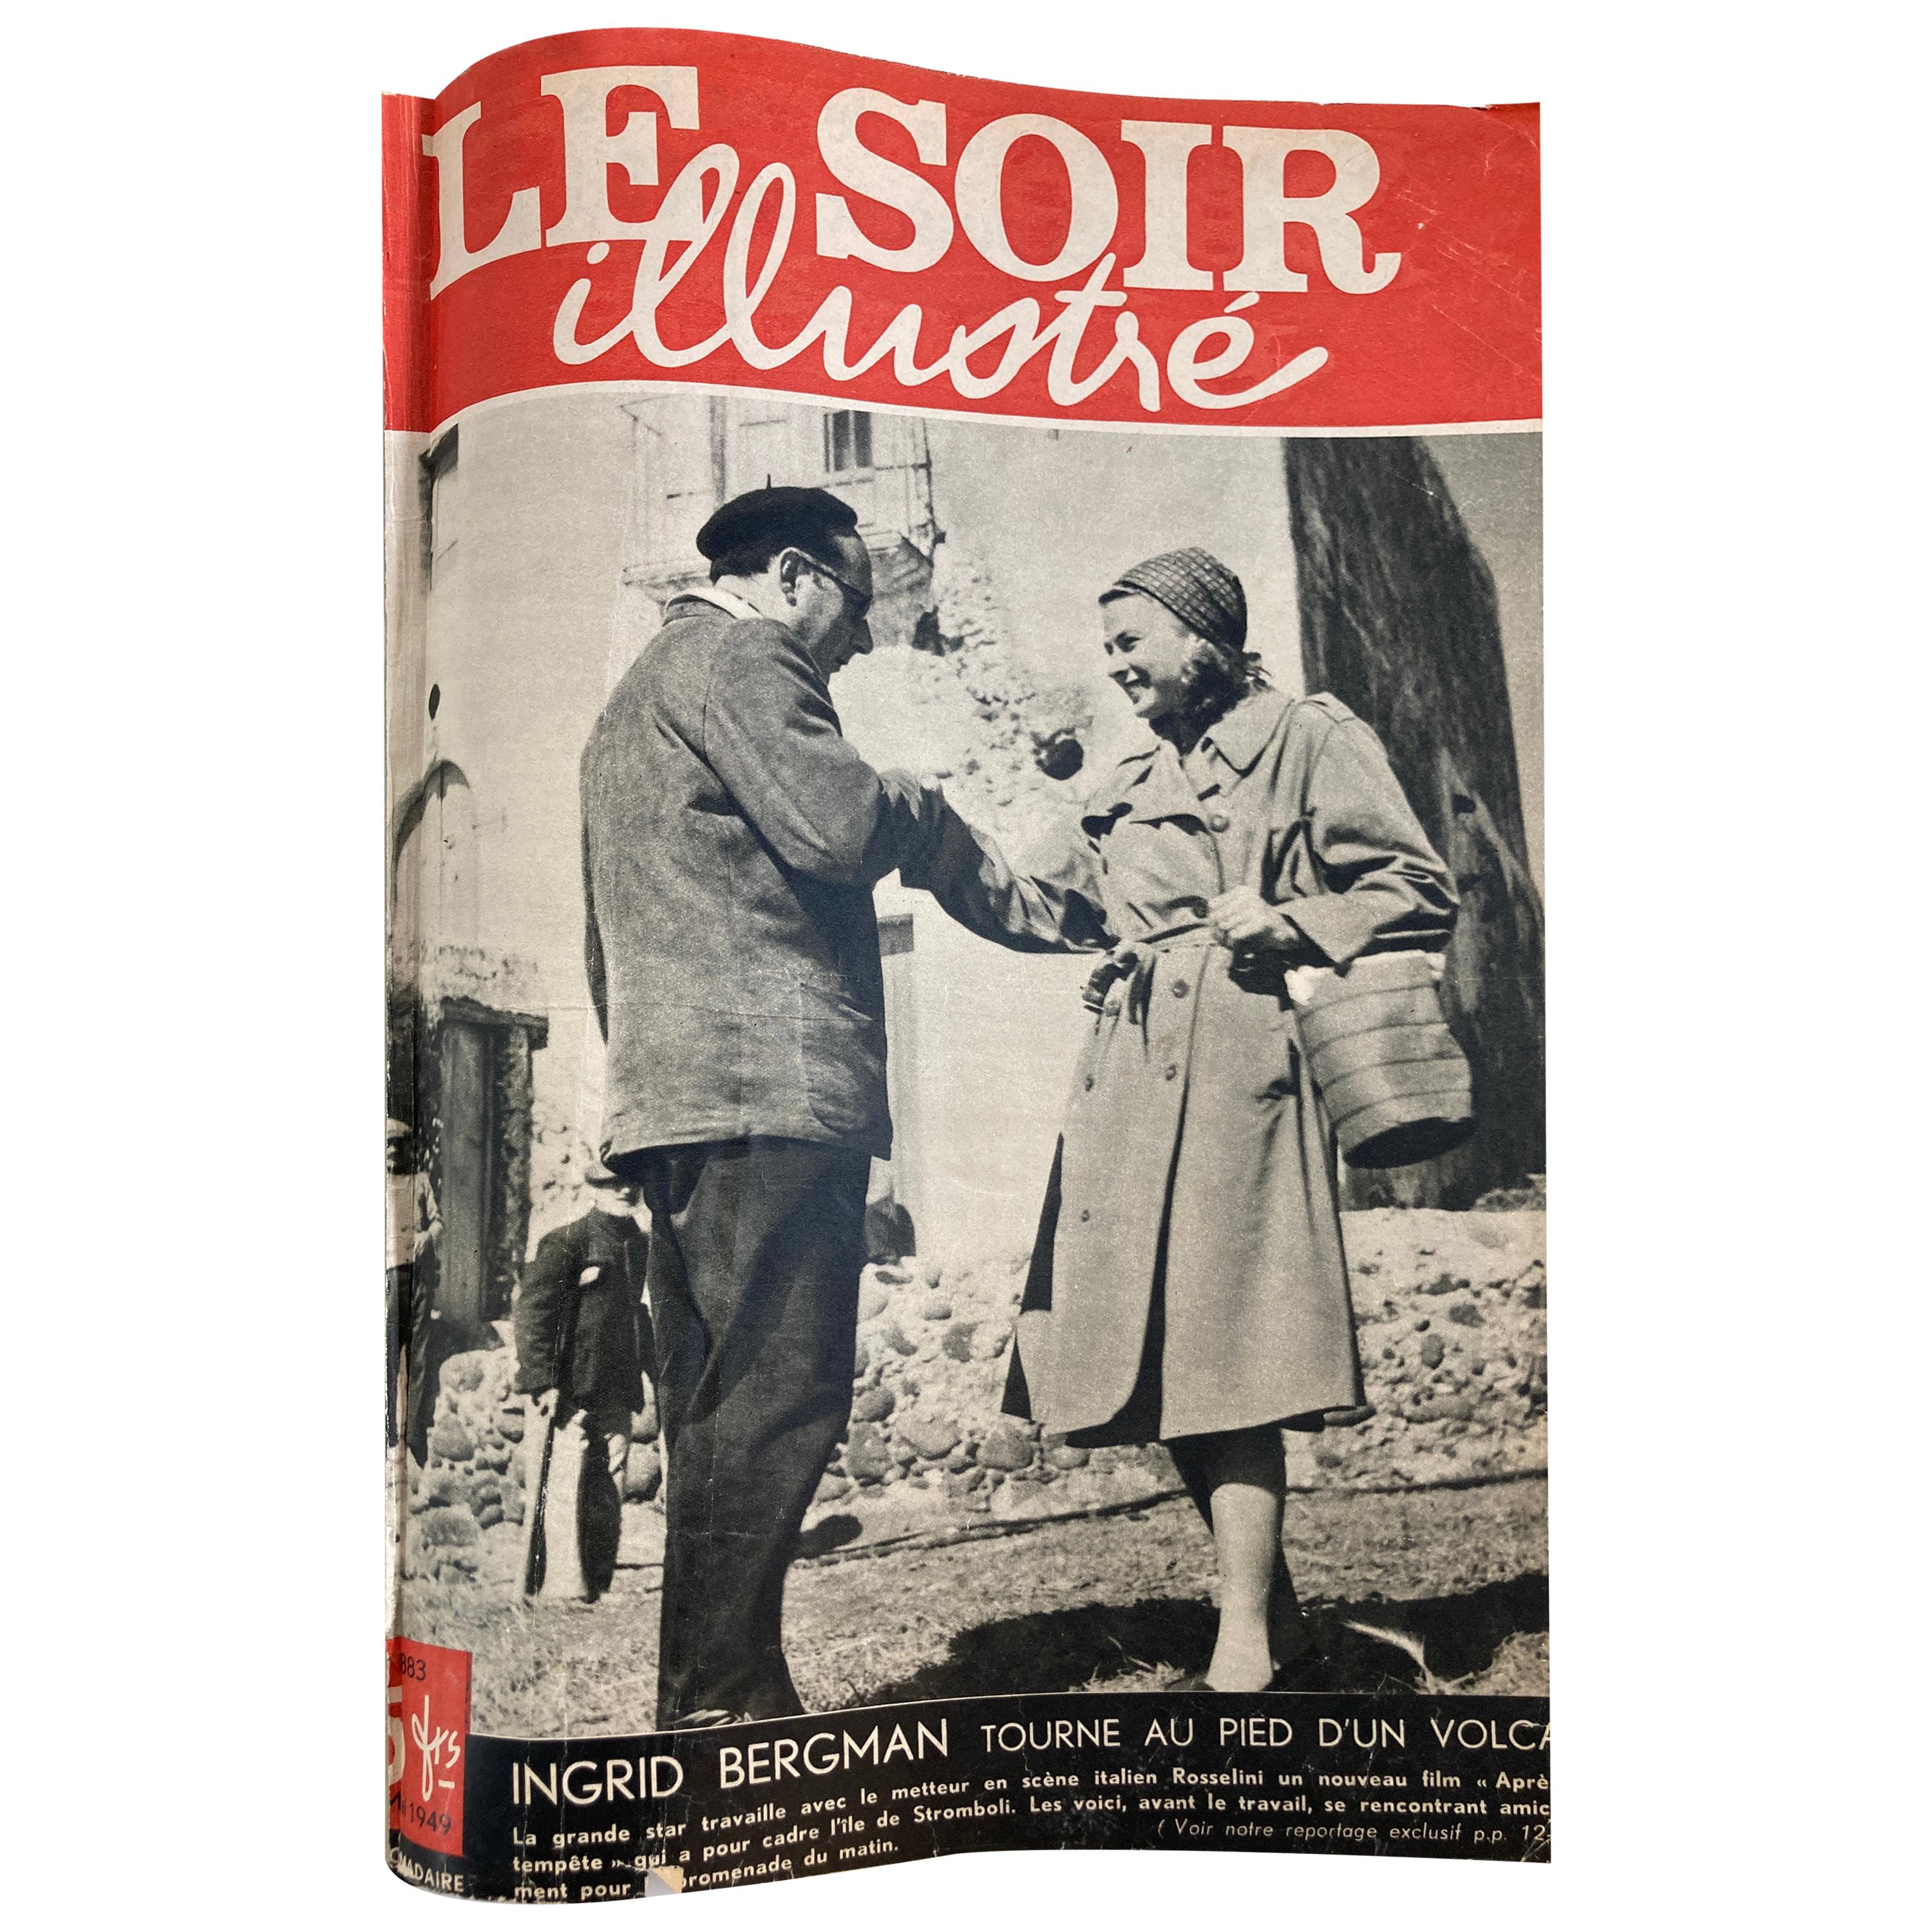 Le Soir Illustre, mai 1949 à septembre 1949 Magazines français Paris France en vente